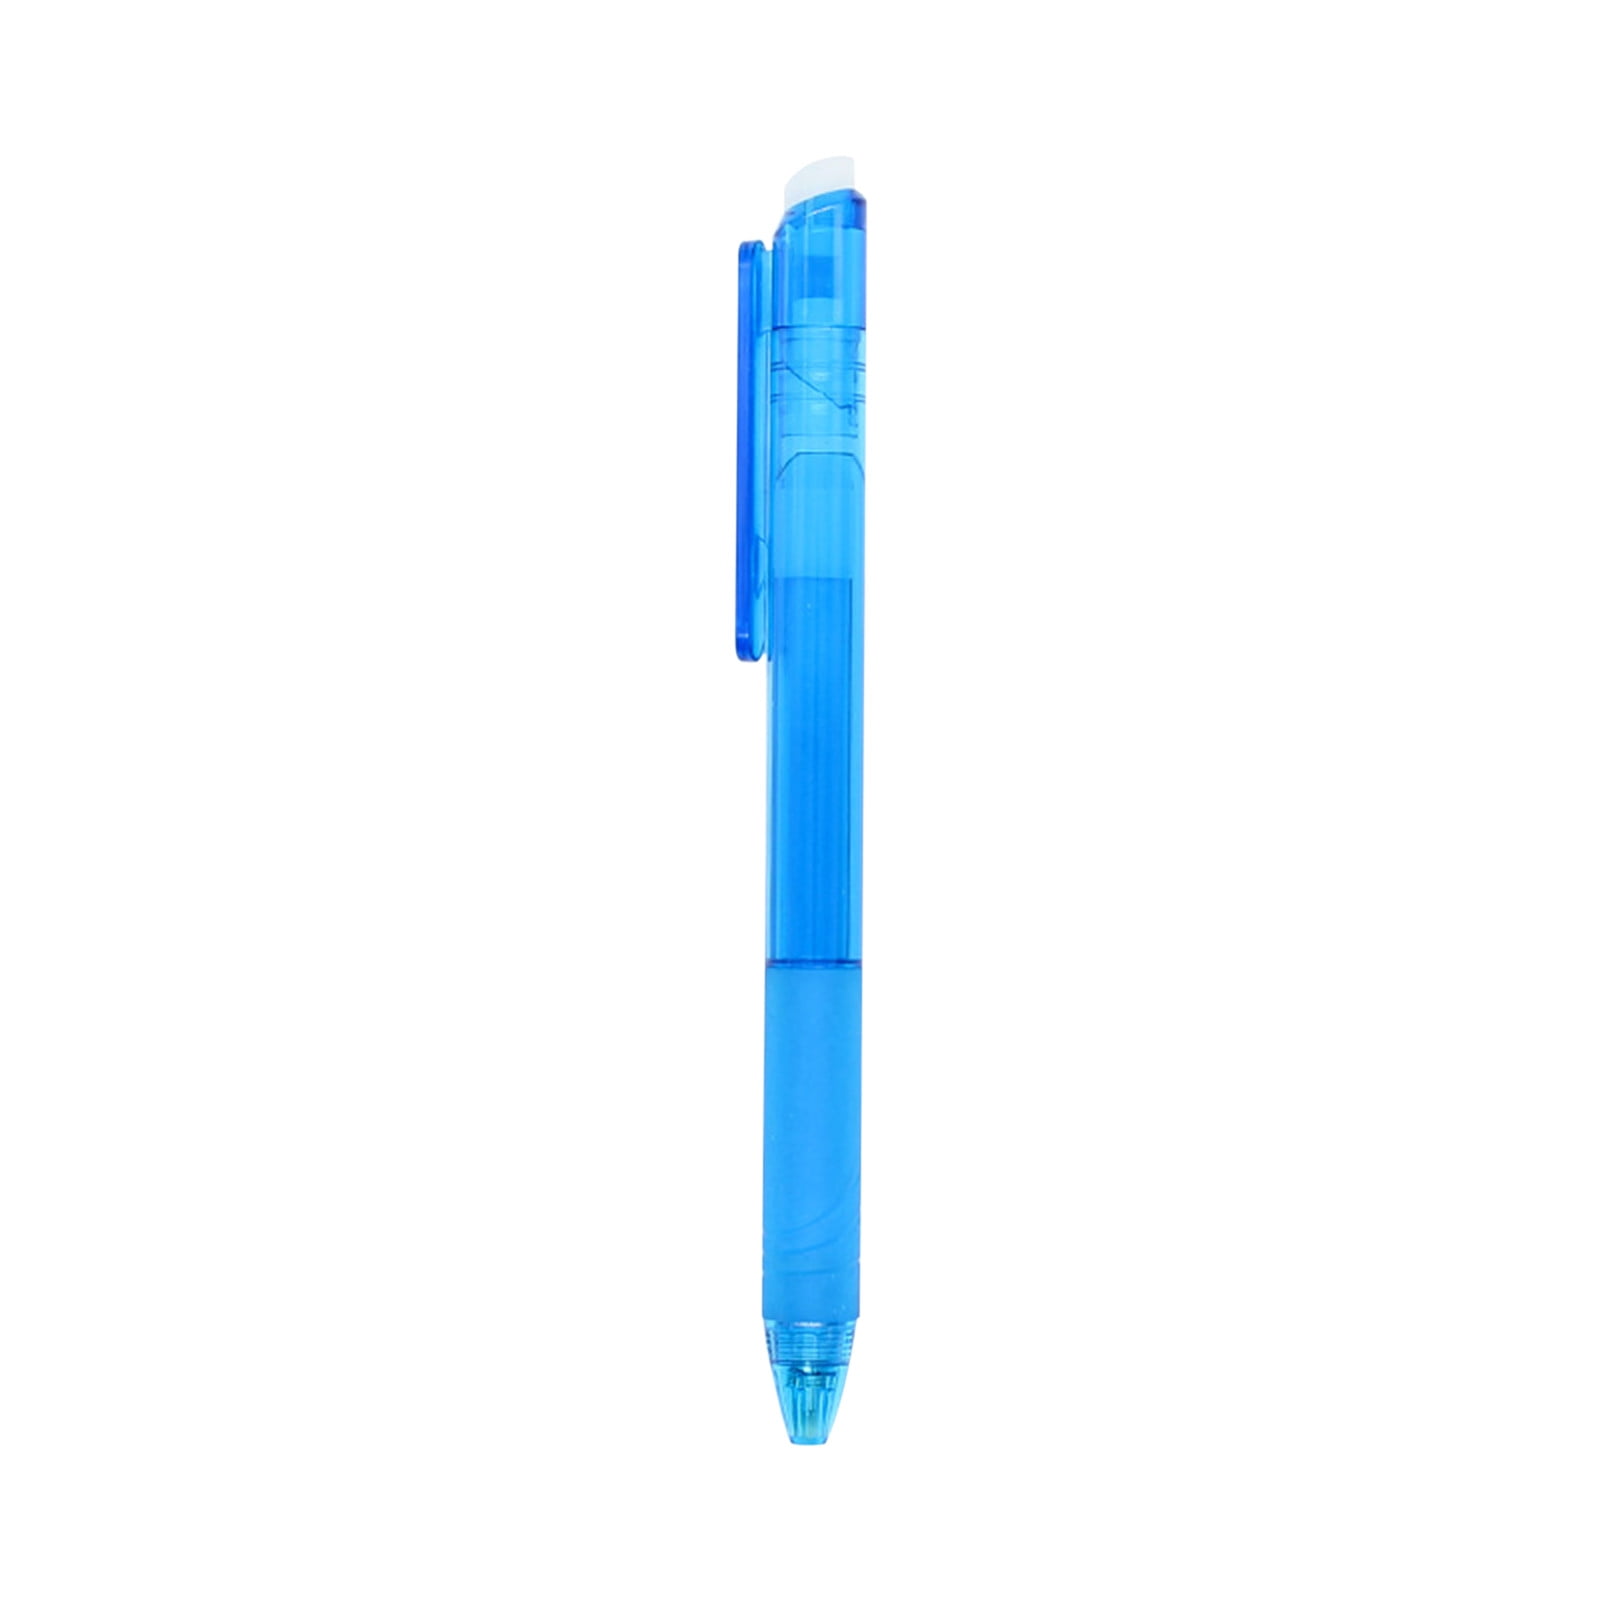 1pcs Creative Shell Neutral Pens Cute Gel Pens 0.5mm Kawaii Pendant Pens  For Kids School Office Supplies